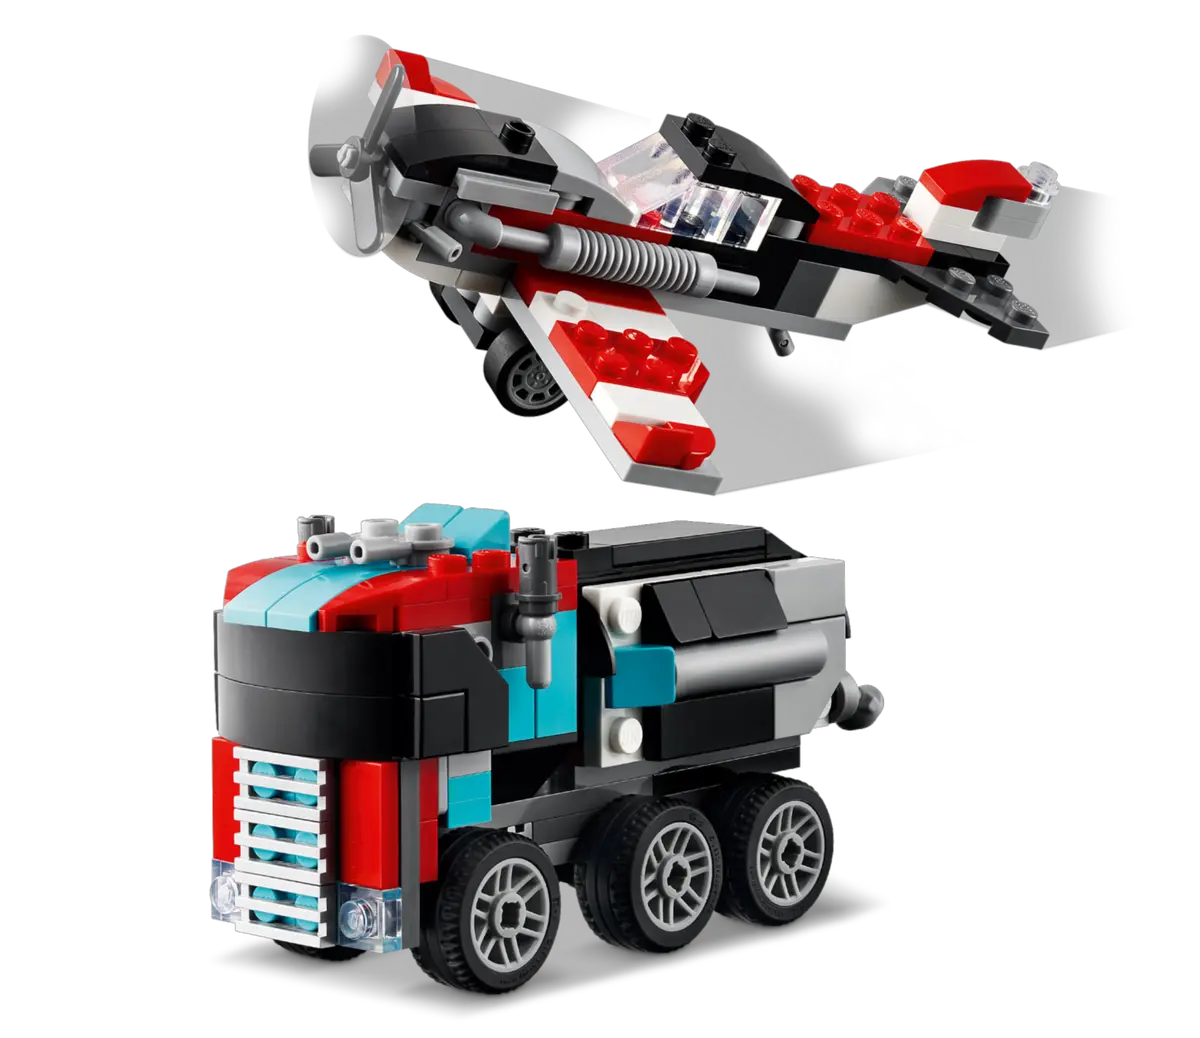 31146 LEGO Creator - Autocarro con elicottero